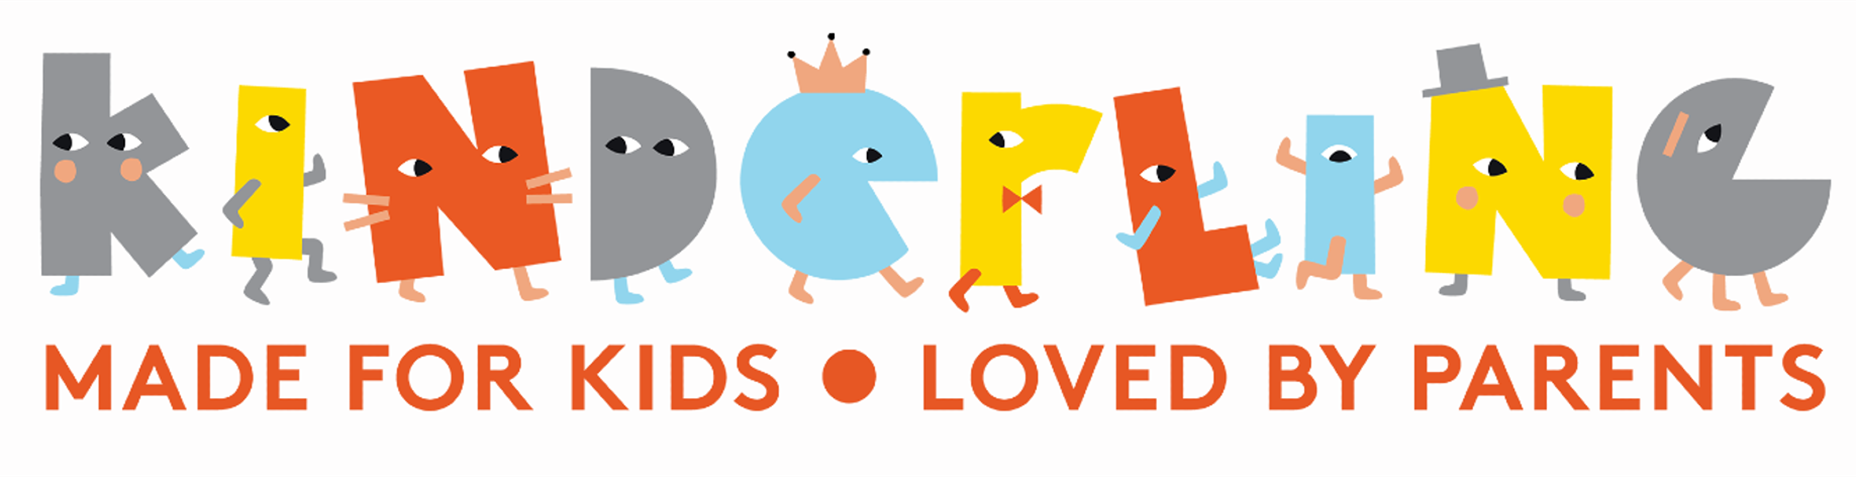 Kinderling logo - made for kids loved by parents